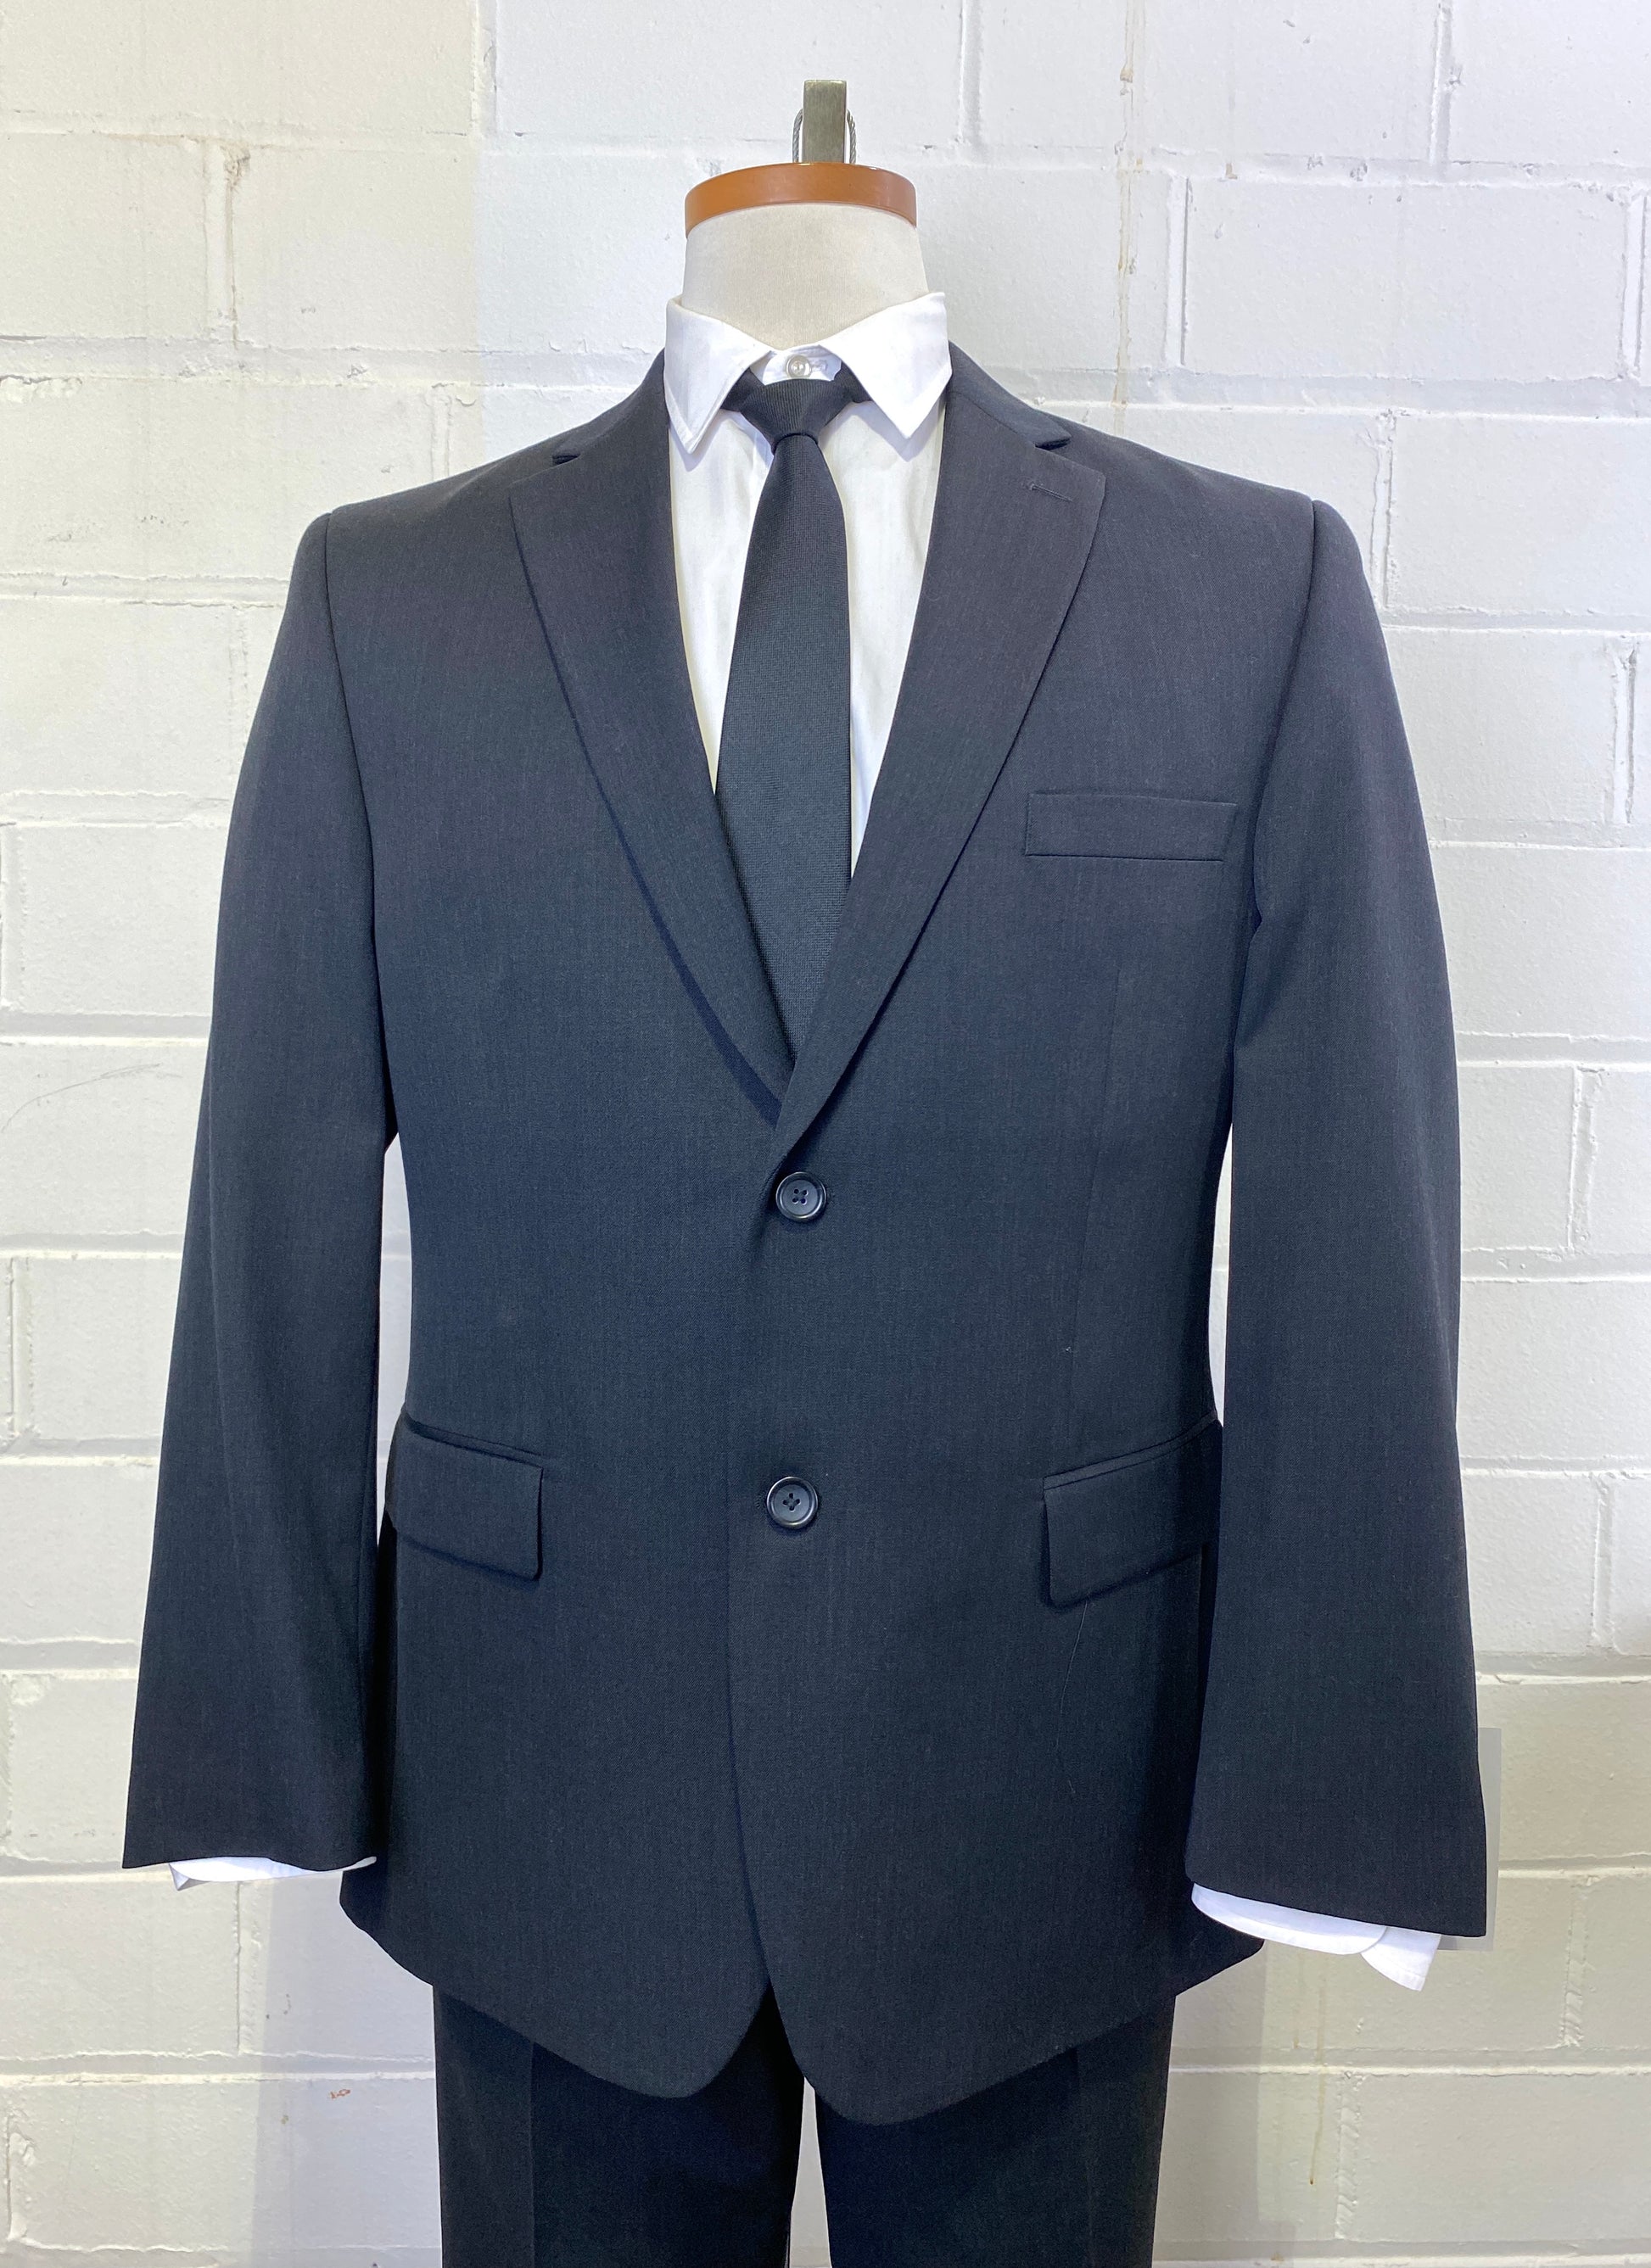 Vintage Men's Grey Suit by Pronto Uomo